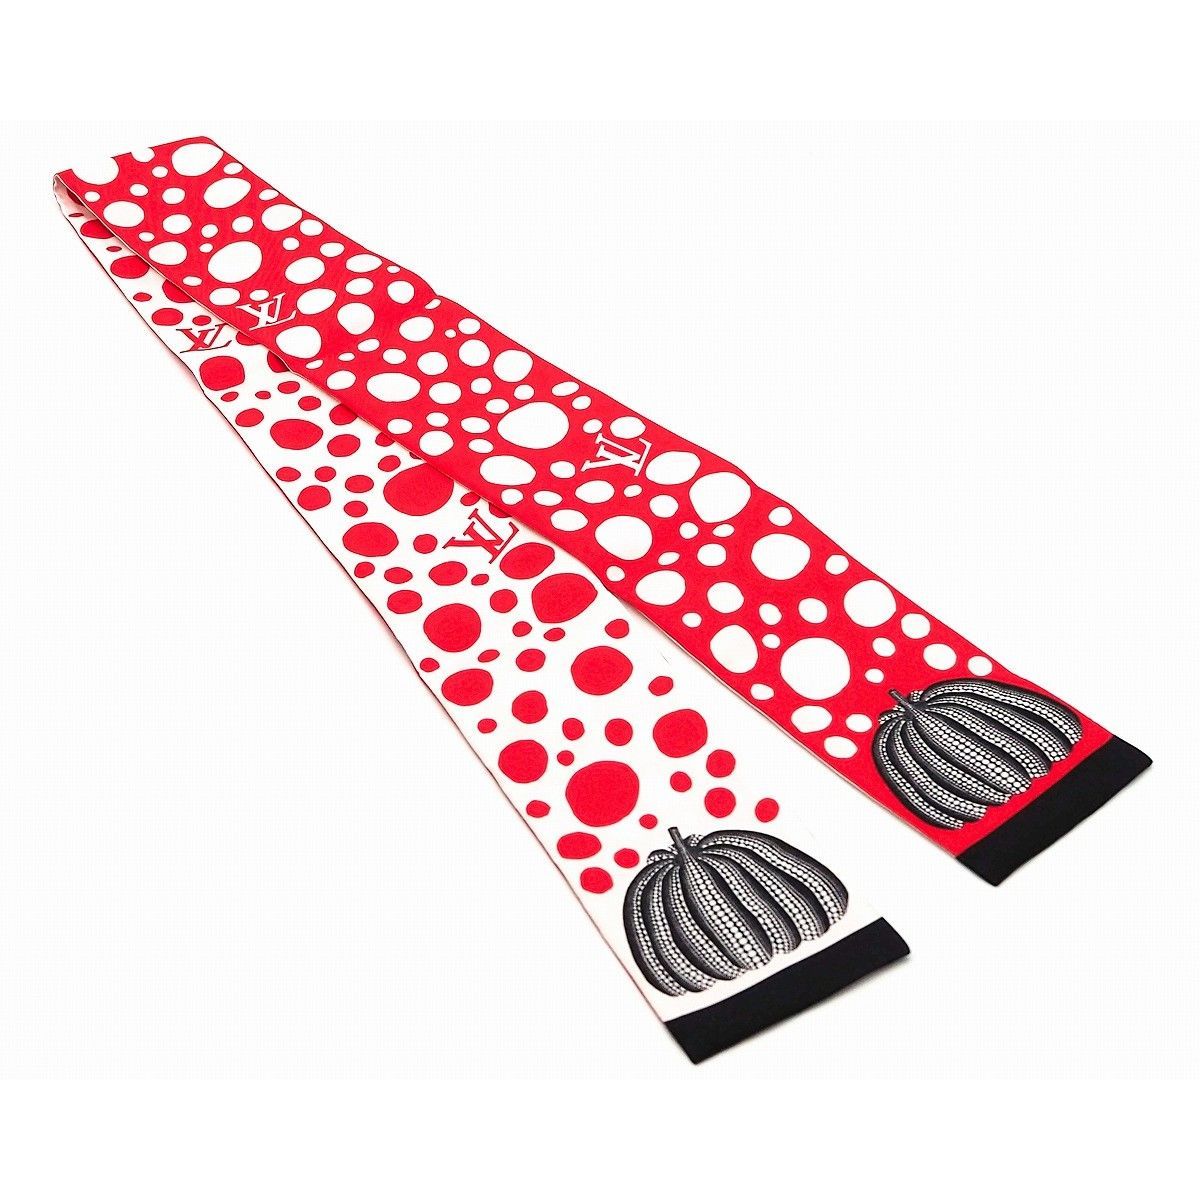 ルイヴィトン LOUISVUITTON スカーフ バンドー  ドット ピンク長方形のスカーフです